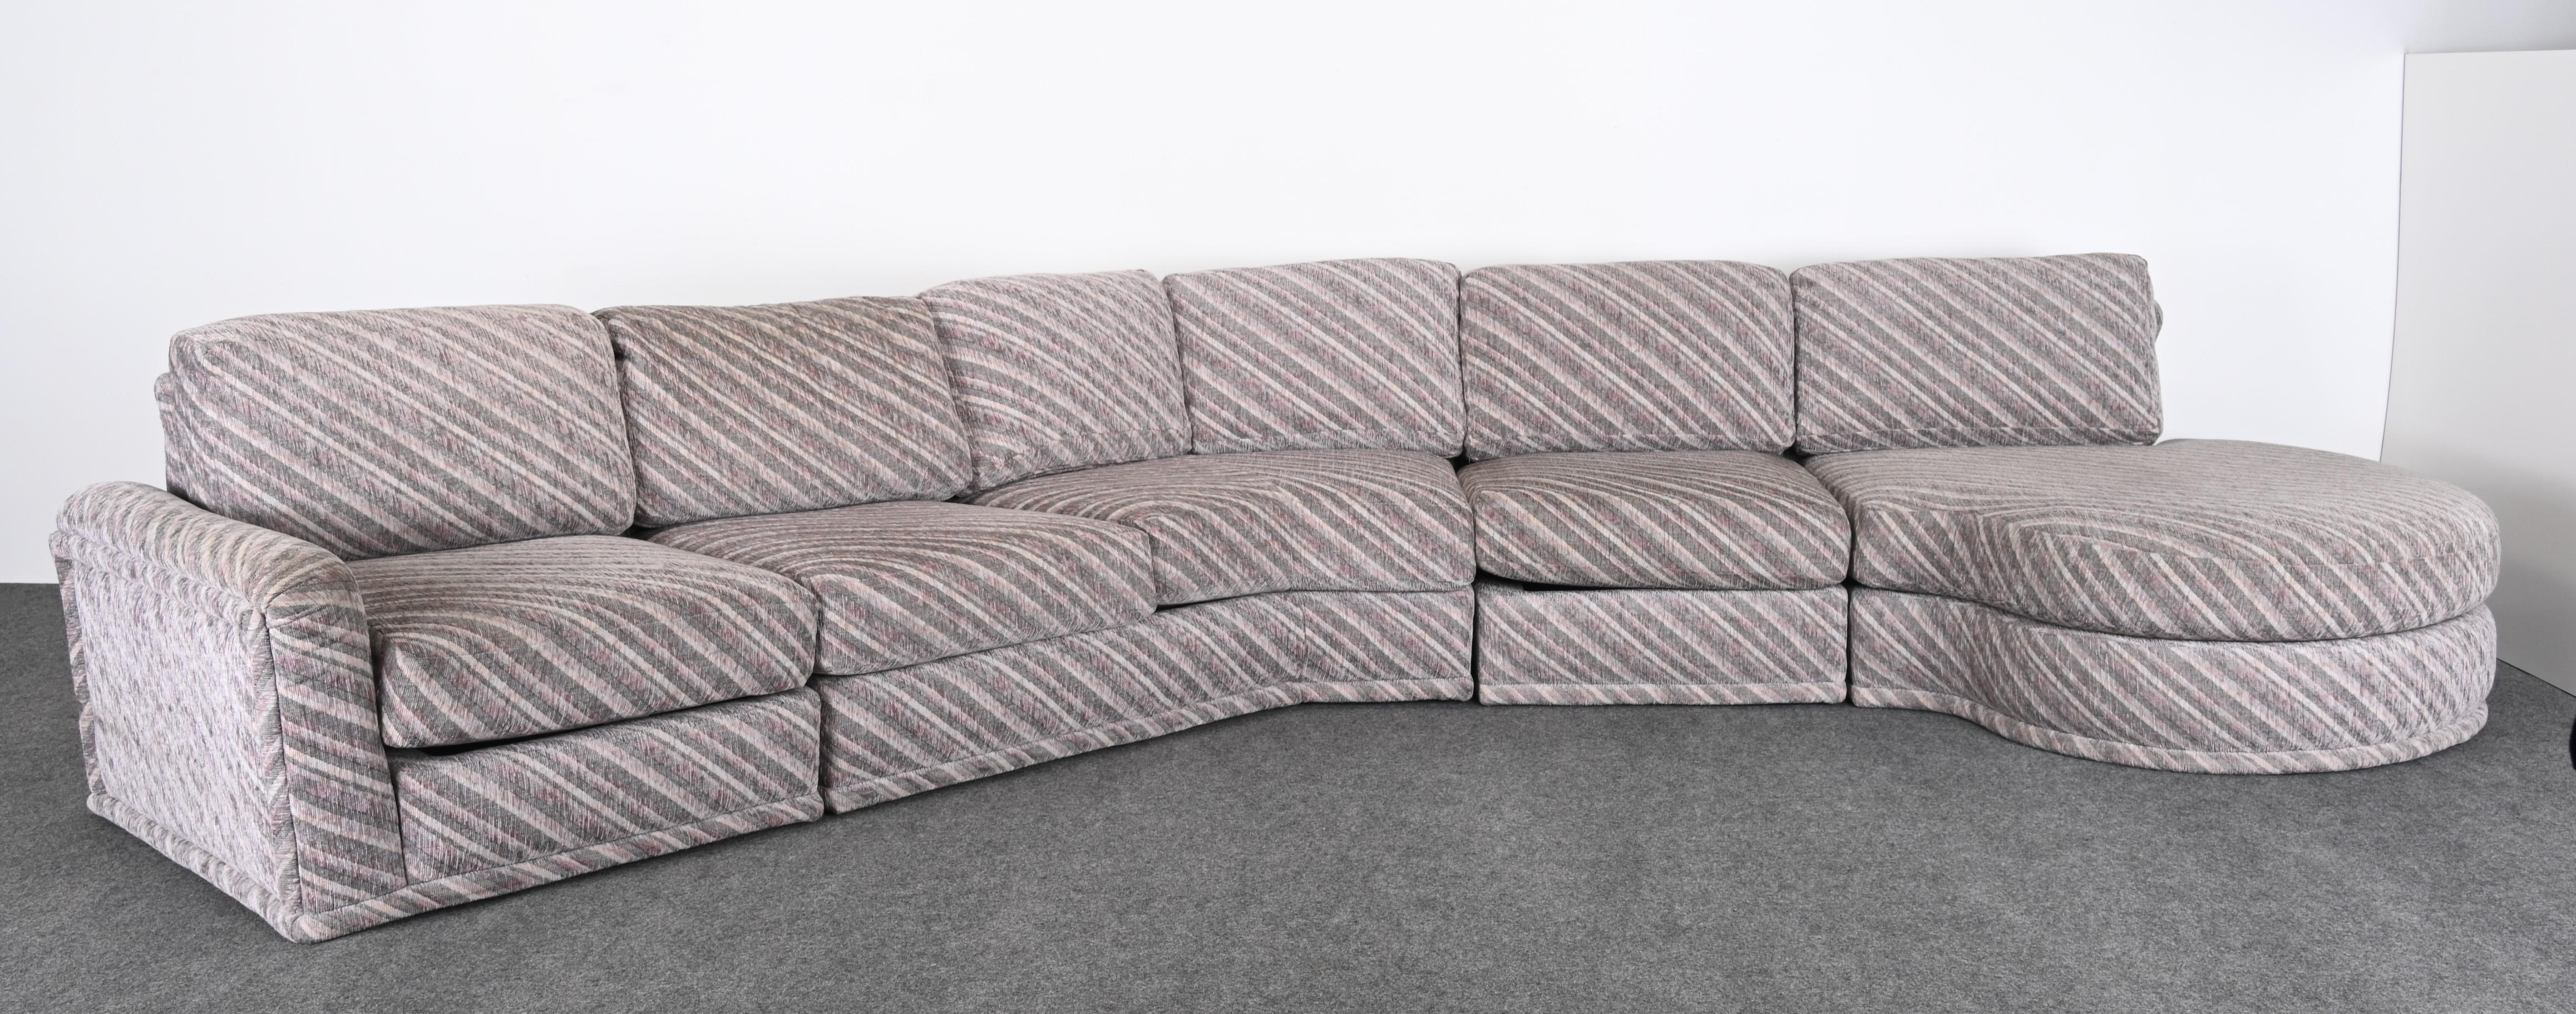 Ein postmodernes Sektionssofa, entworfen von Milo Baughman für Thayer Coggin. Dieses fabelhafte Sofa stammt aus einer alten Wohnung und wurde um 1990 maßgefertigt. Dieses große Sofa hat zusätzliche Teile, die alternativ verwendet werden können.